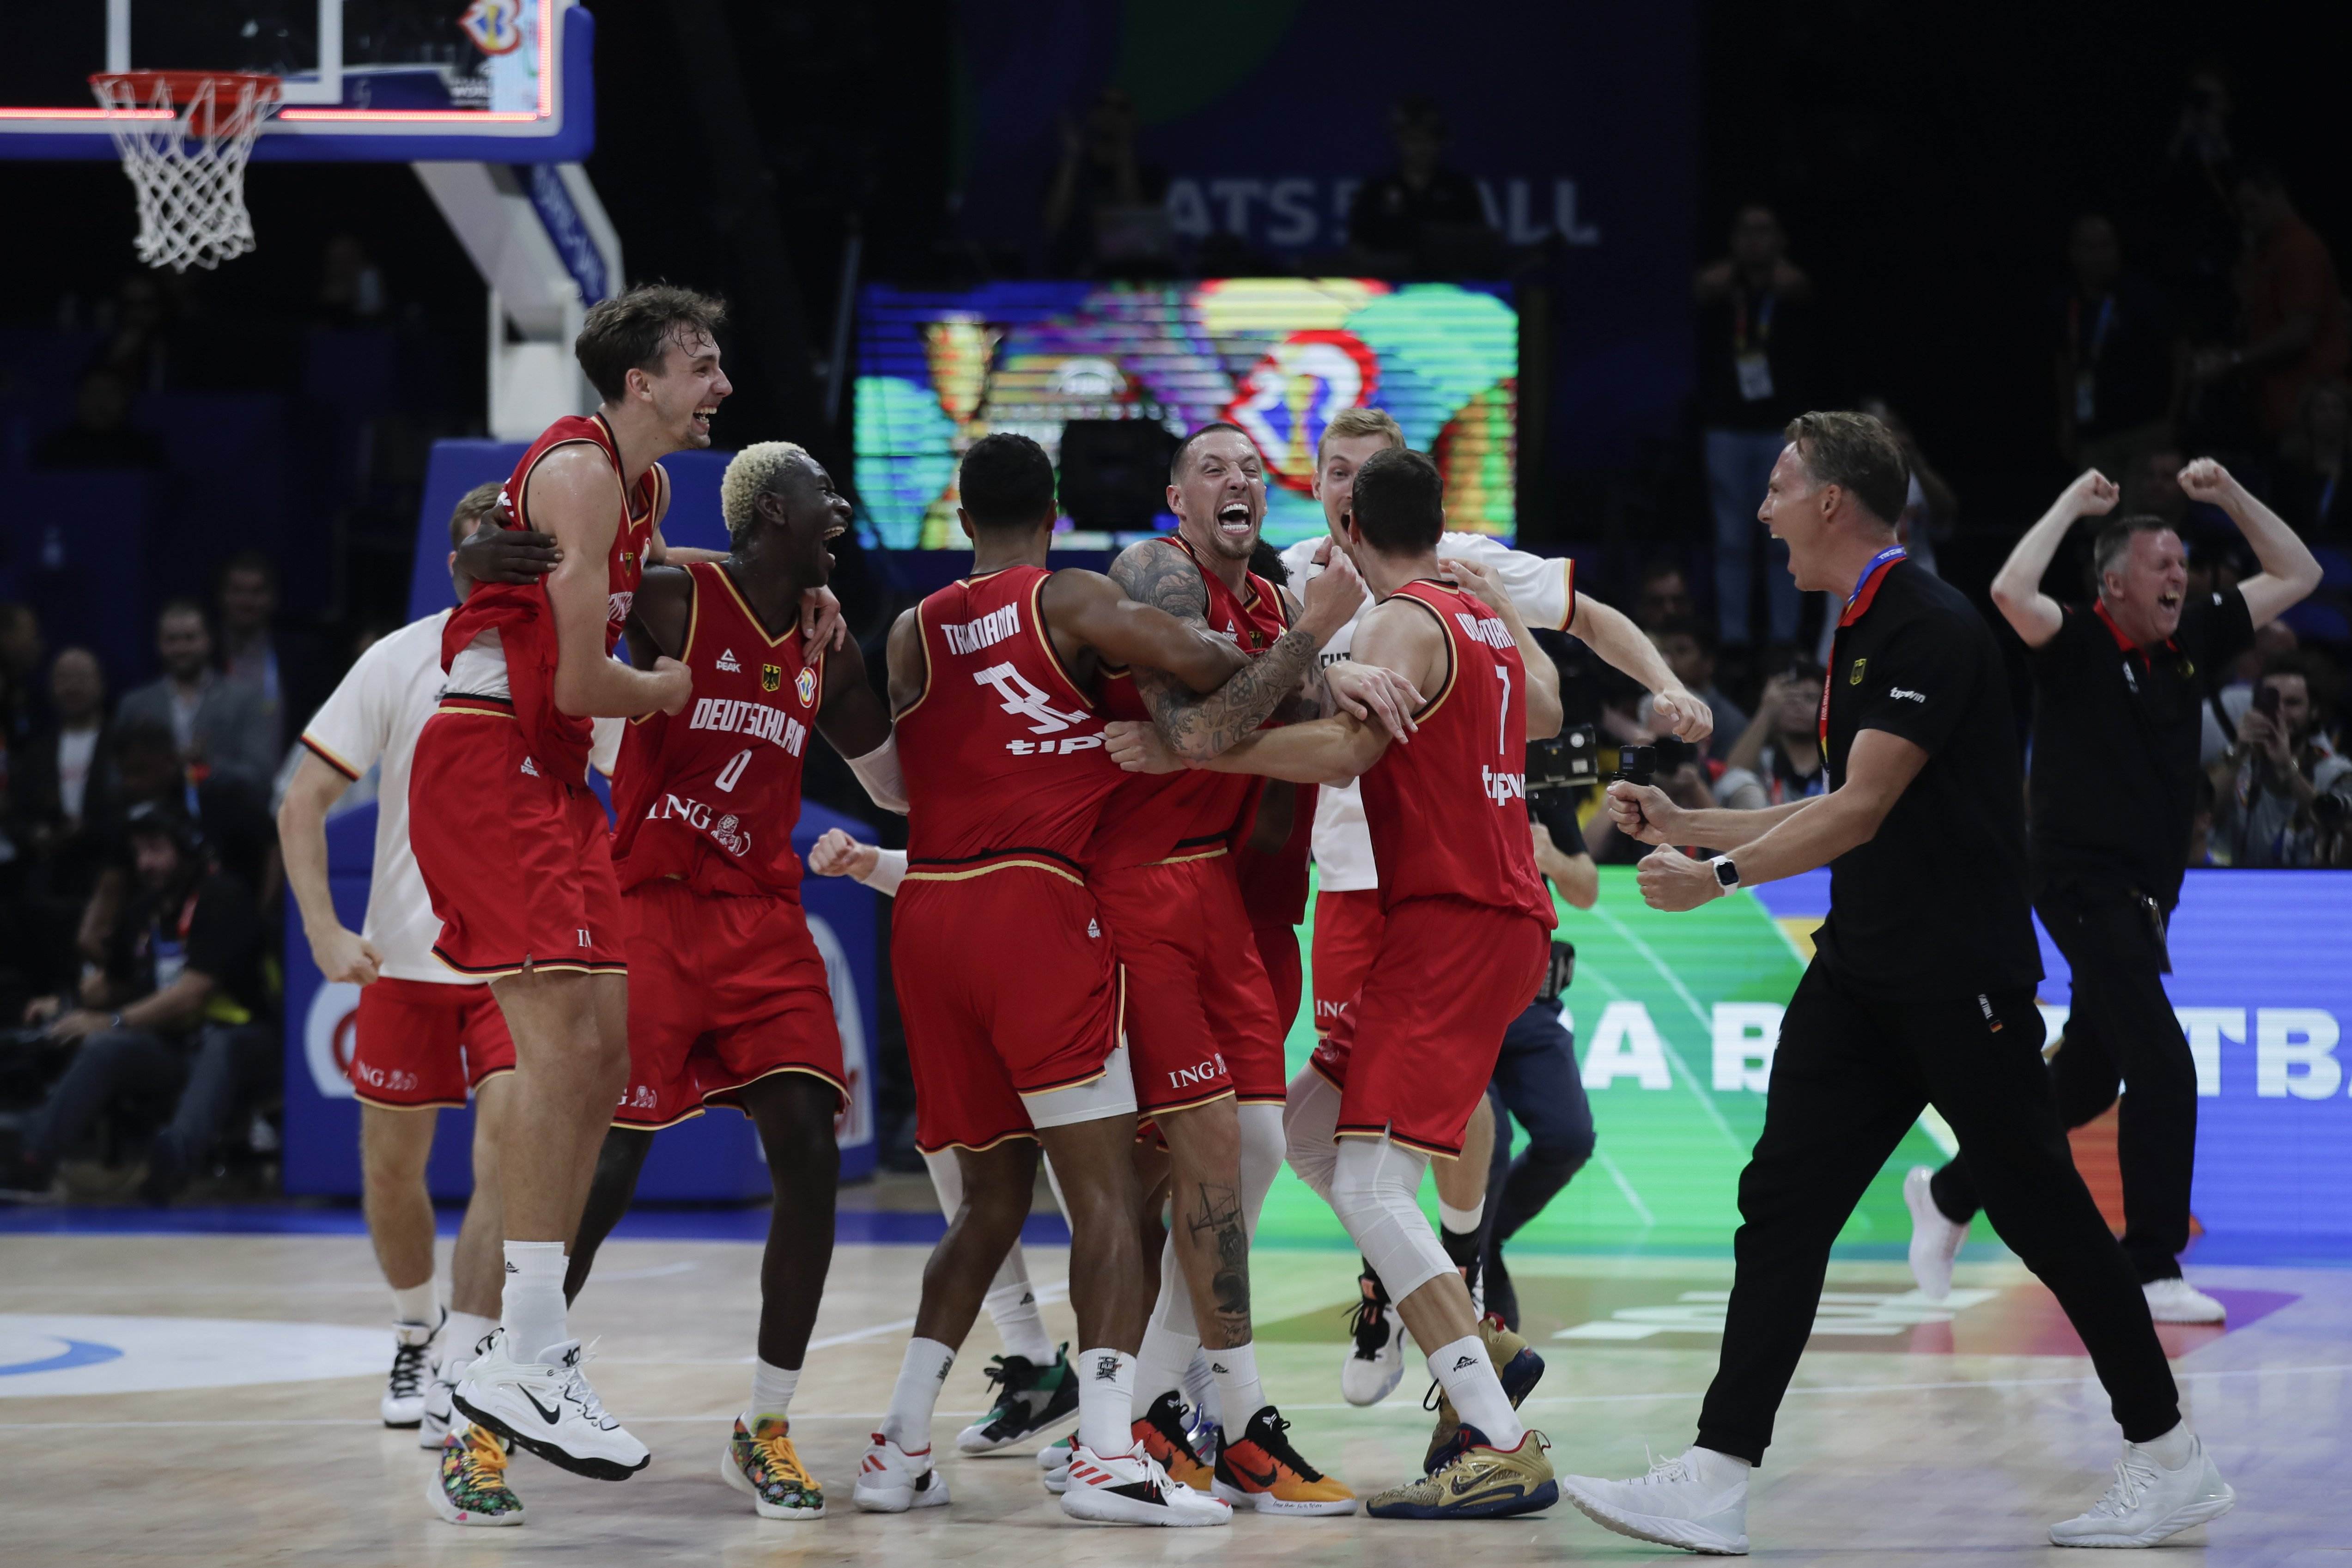 Sorpresa absoluta en el Mundial de baloncesto: Alemania se carga a los Estados Unidos en semifinales